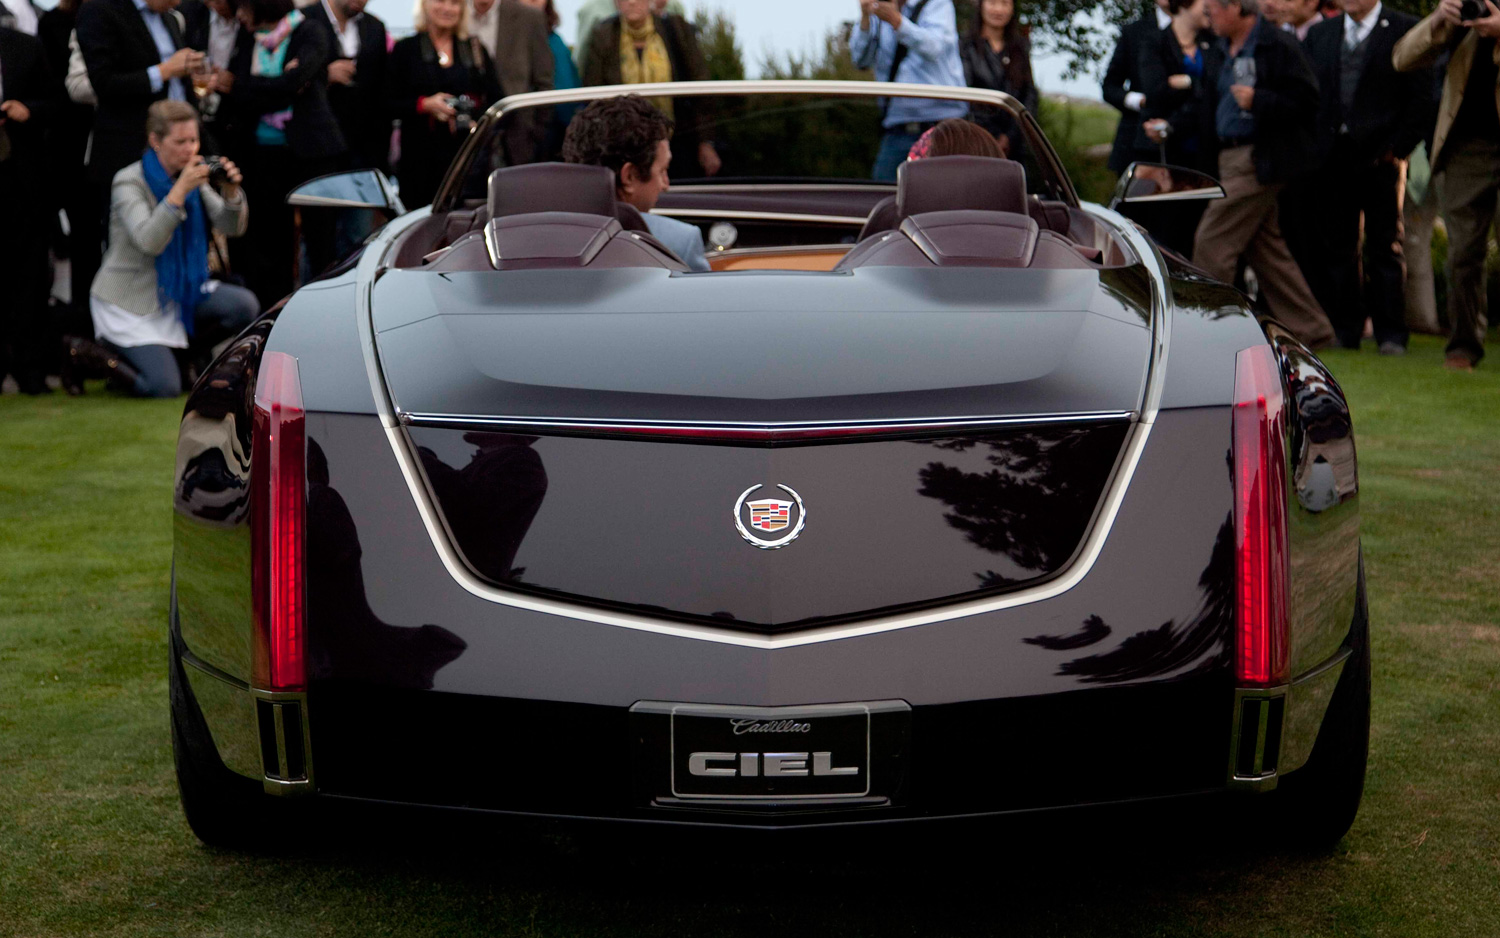 Cadillac Ciel Concept Backgrounds, Compatible - PC, Mobile, Gadgets| 1500x938 px